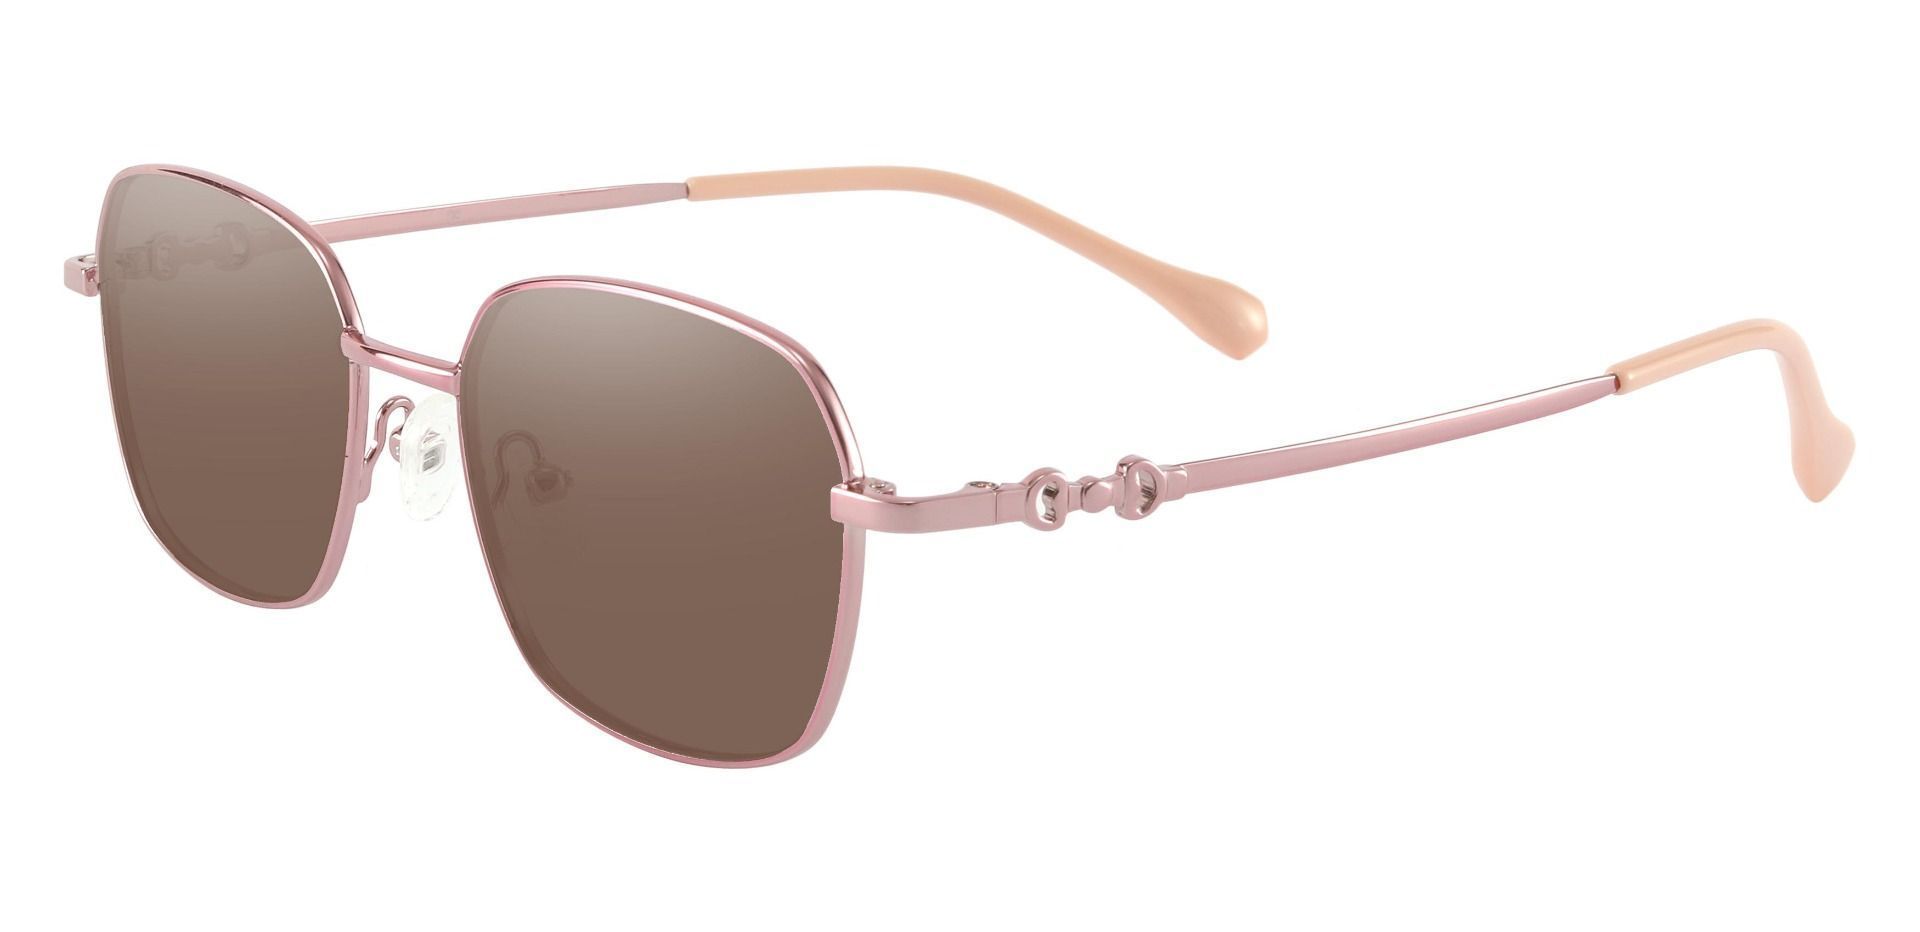 Averill Geometric Progressive Sunglasses - Rose Gold Frame With Brown Lenses